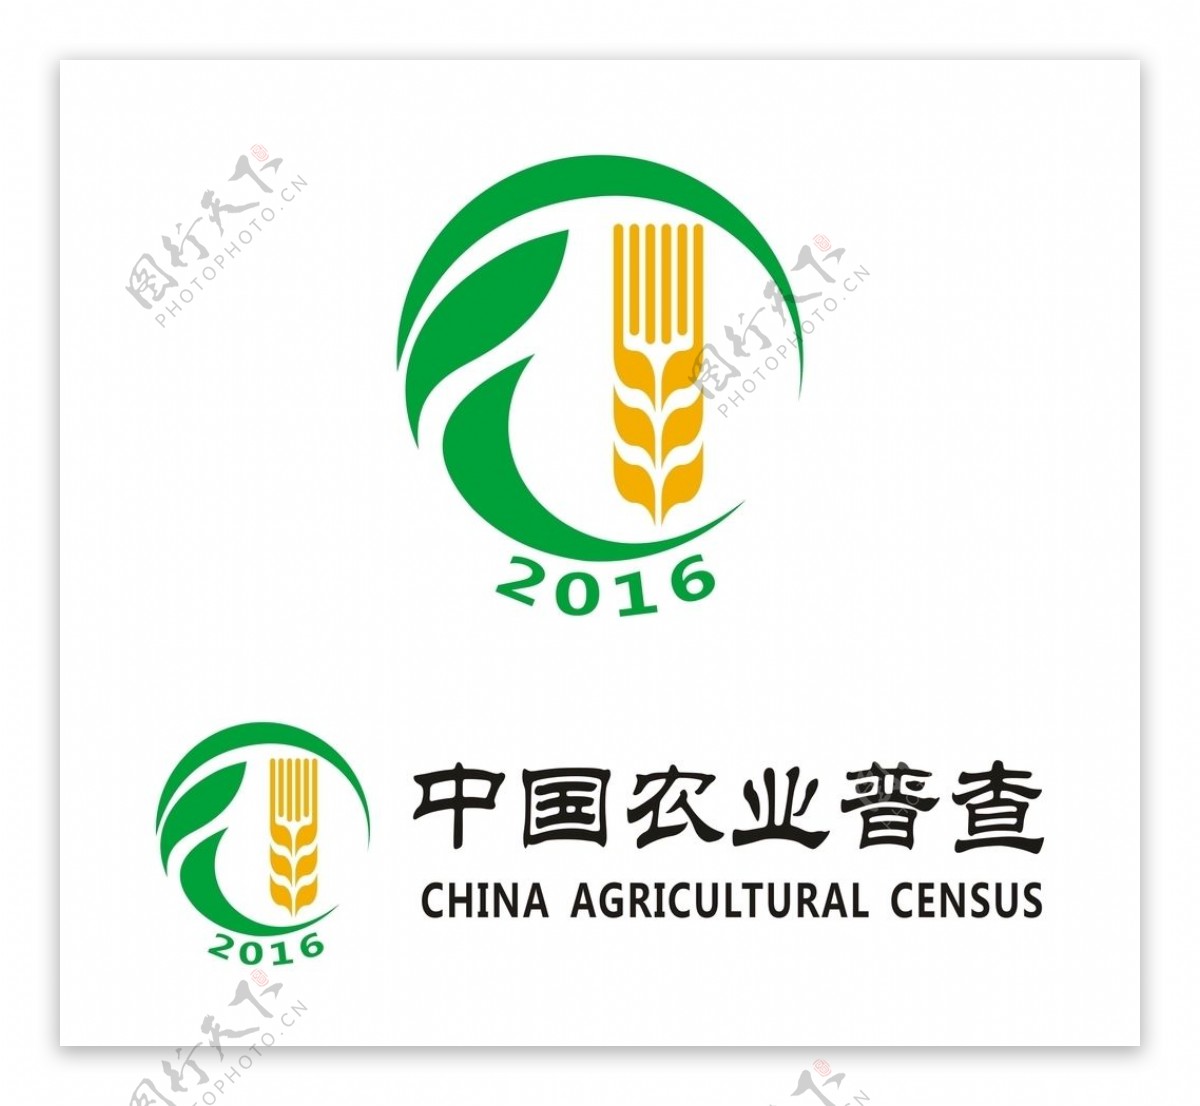 中国农业普查LOGO矢量图